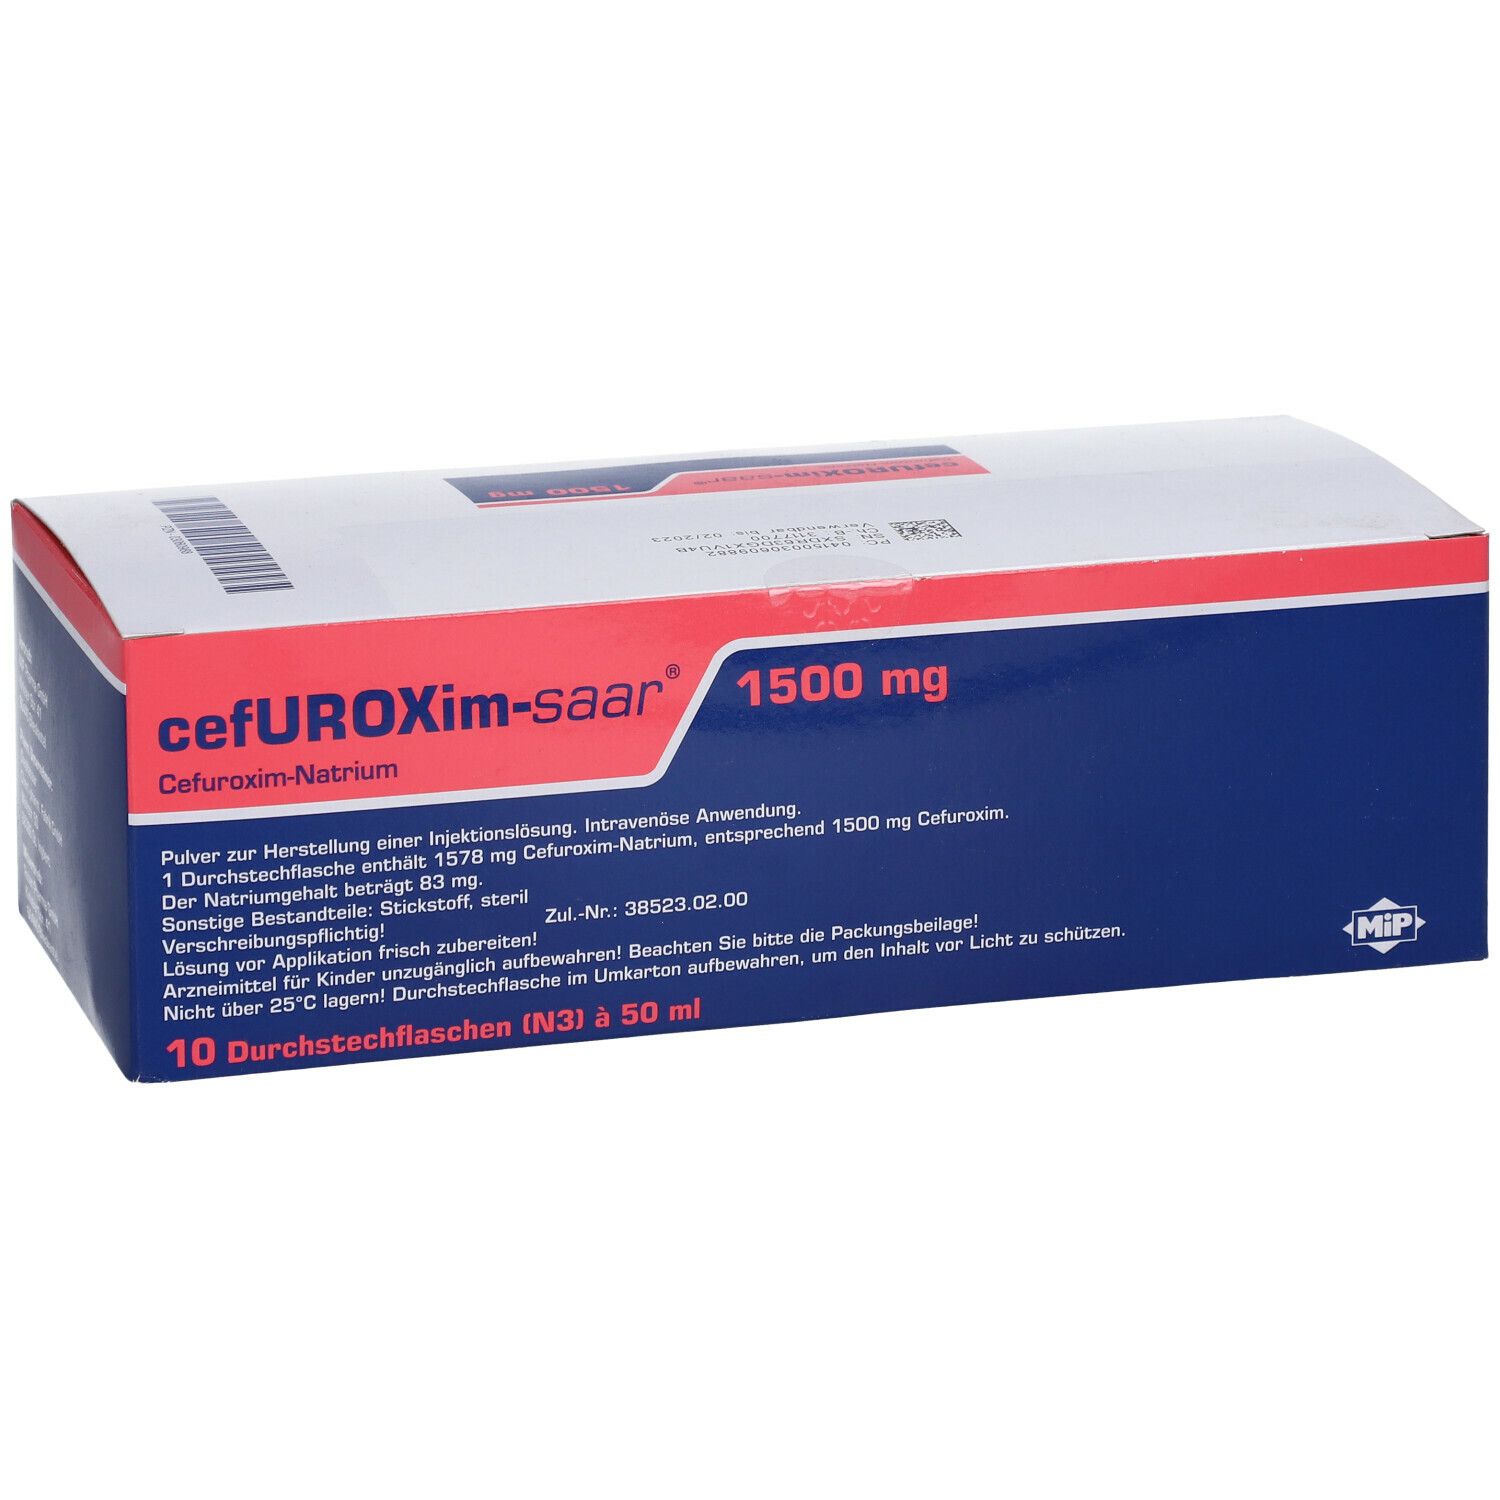 Cefuroxim-saar® 1500 mg